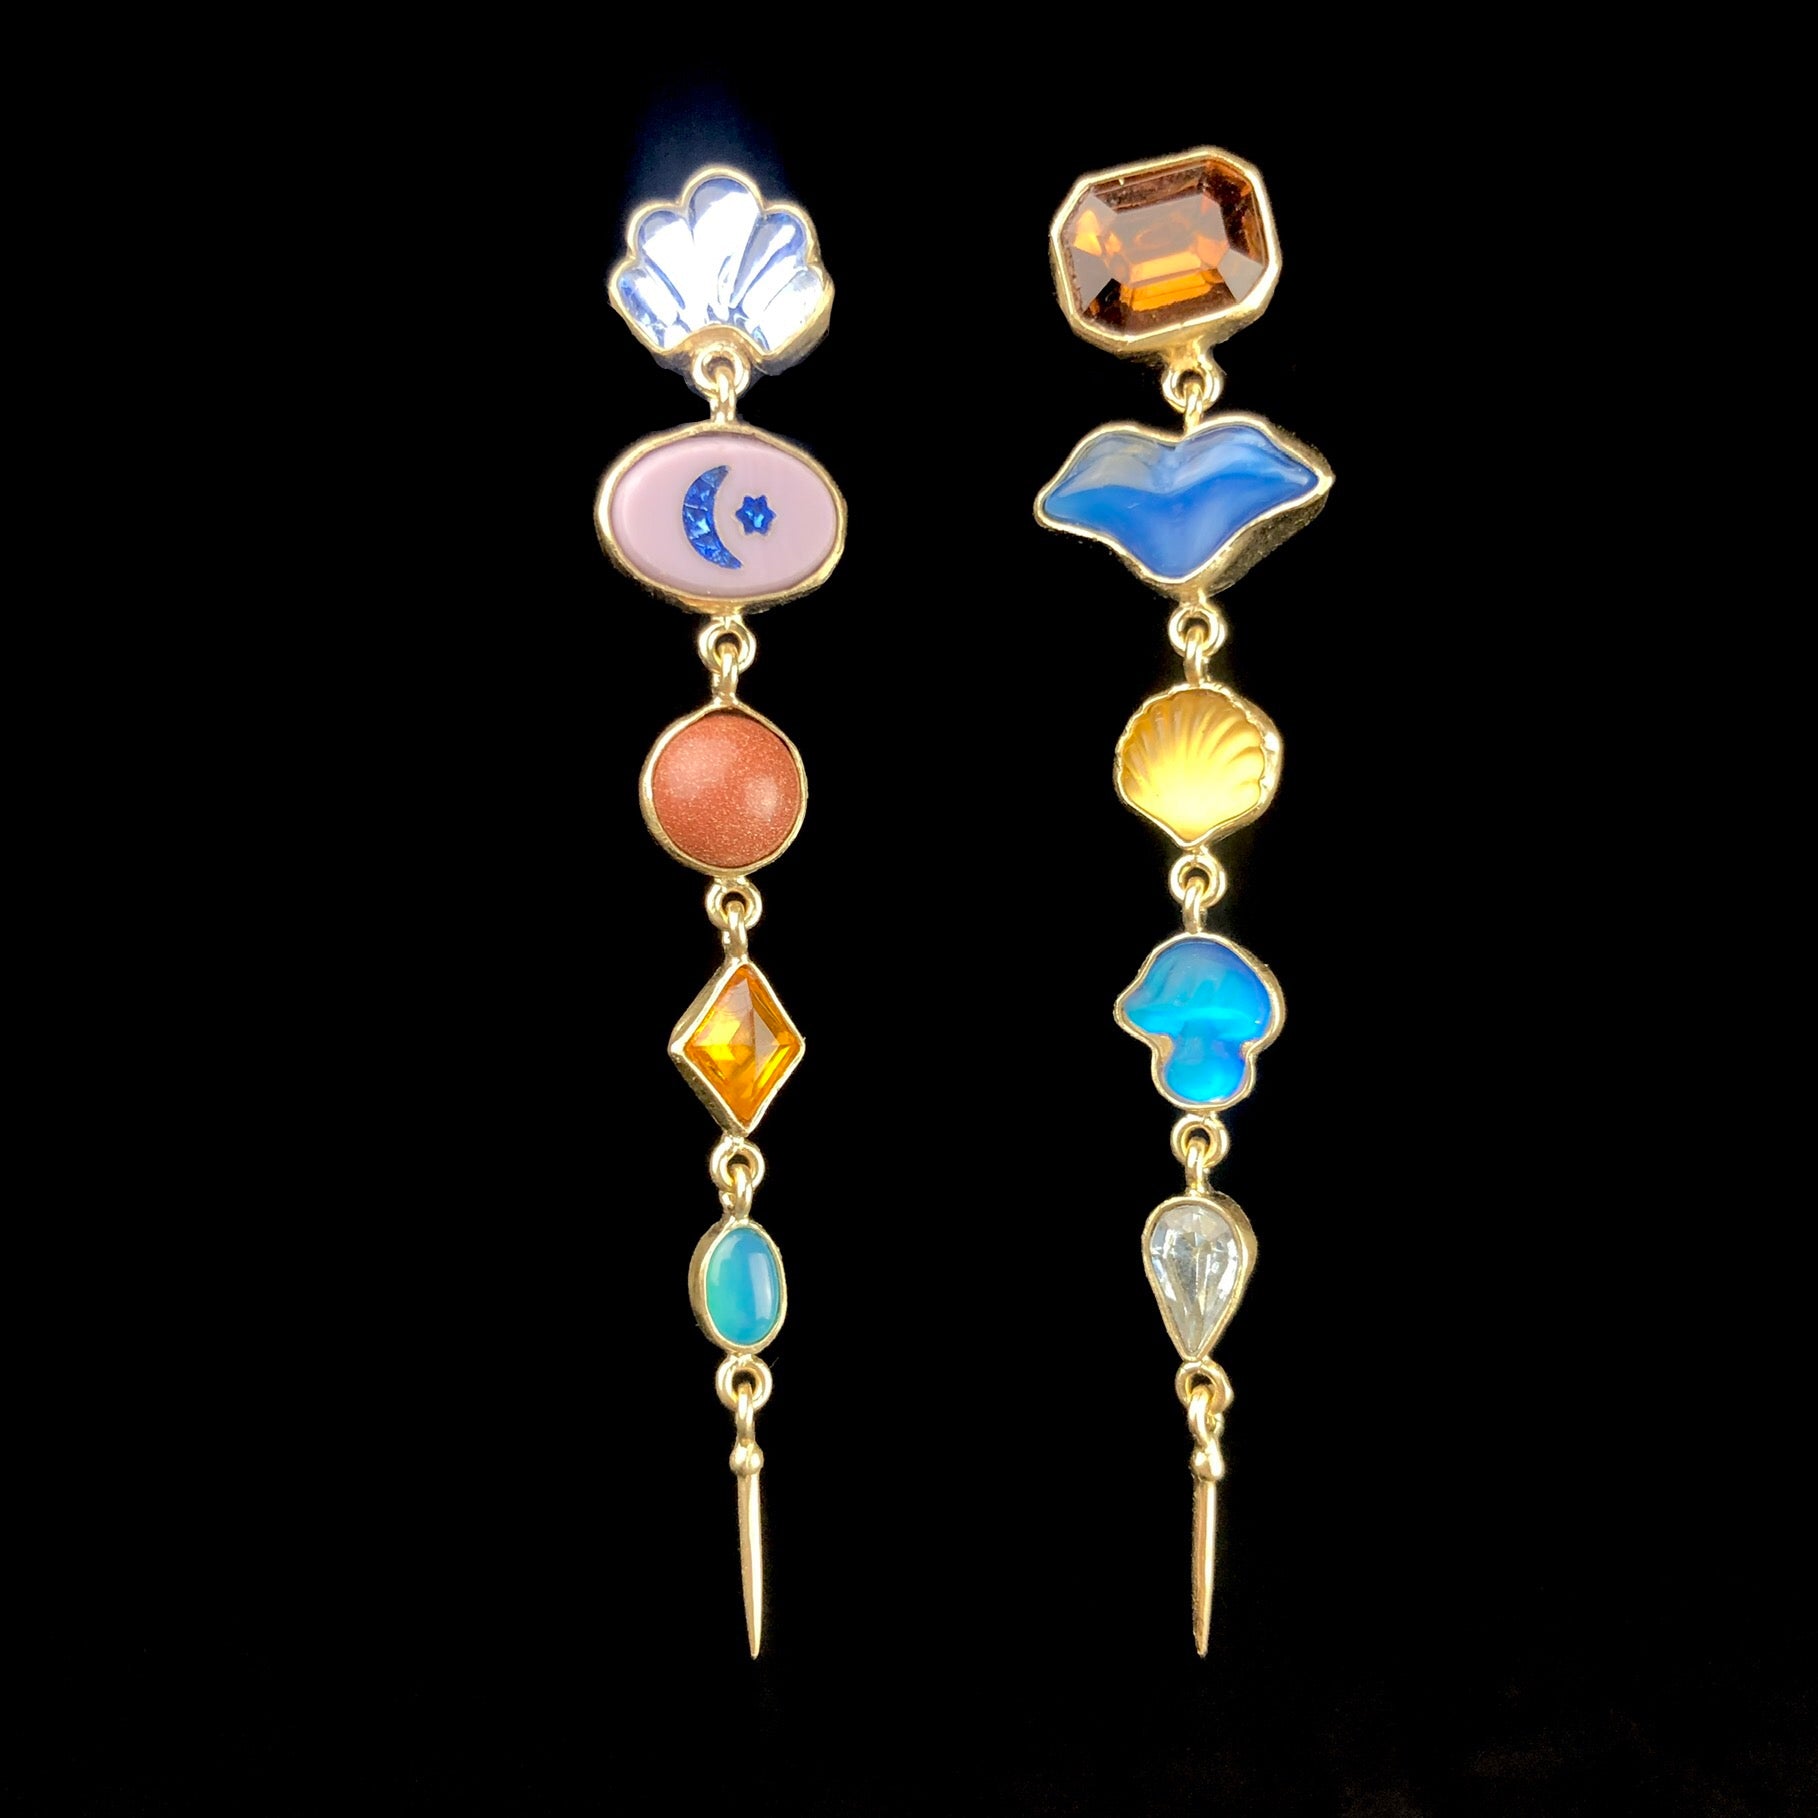 Five Charm Victorian Drop Stud Earrings shown side by side